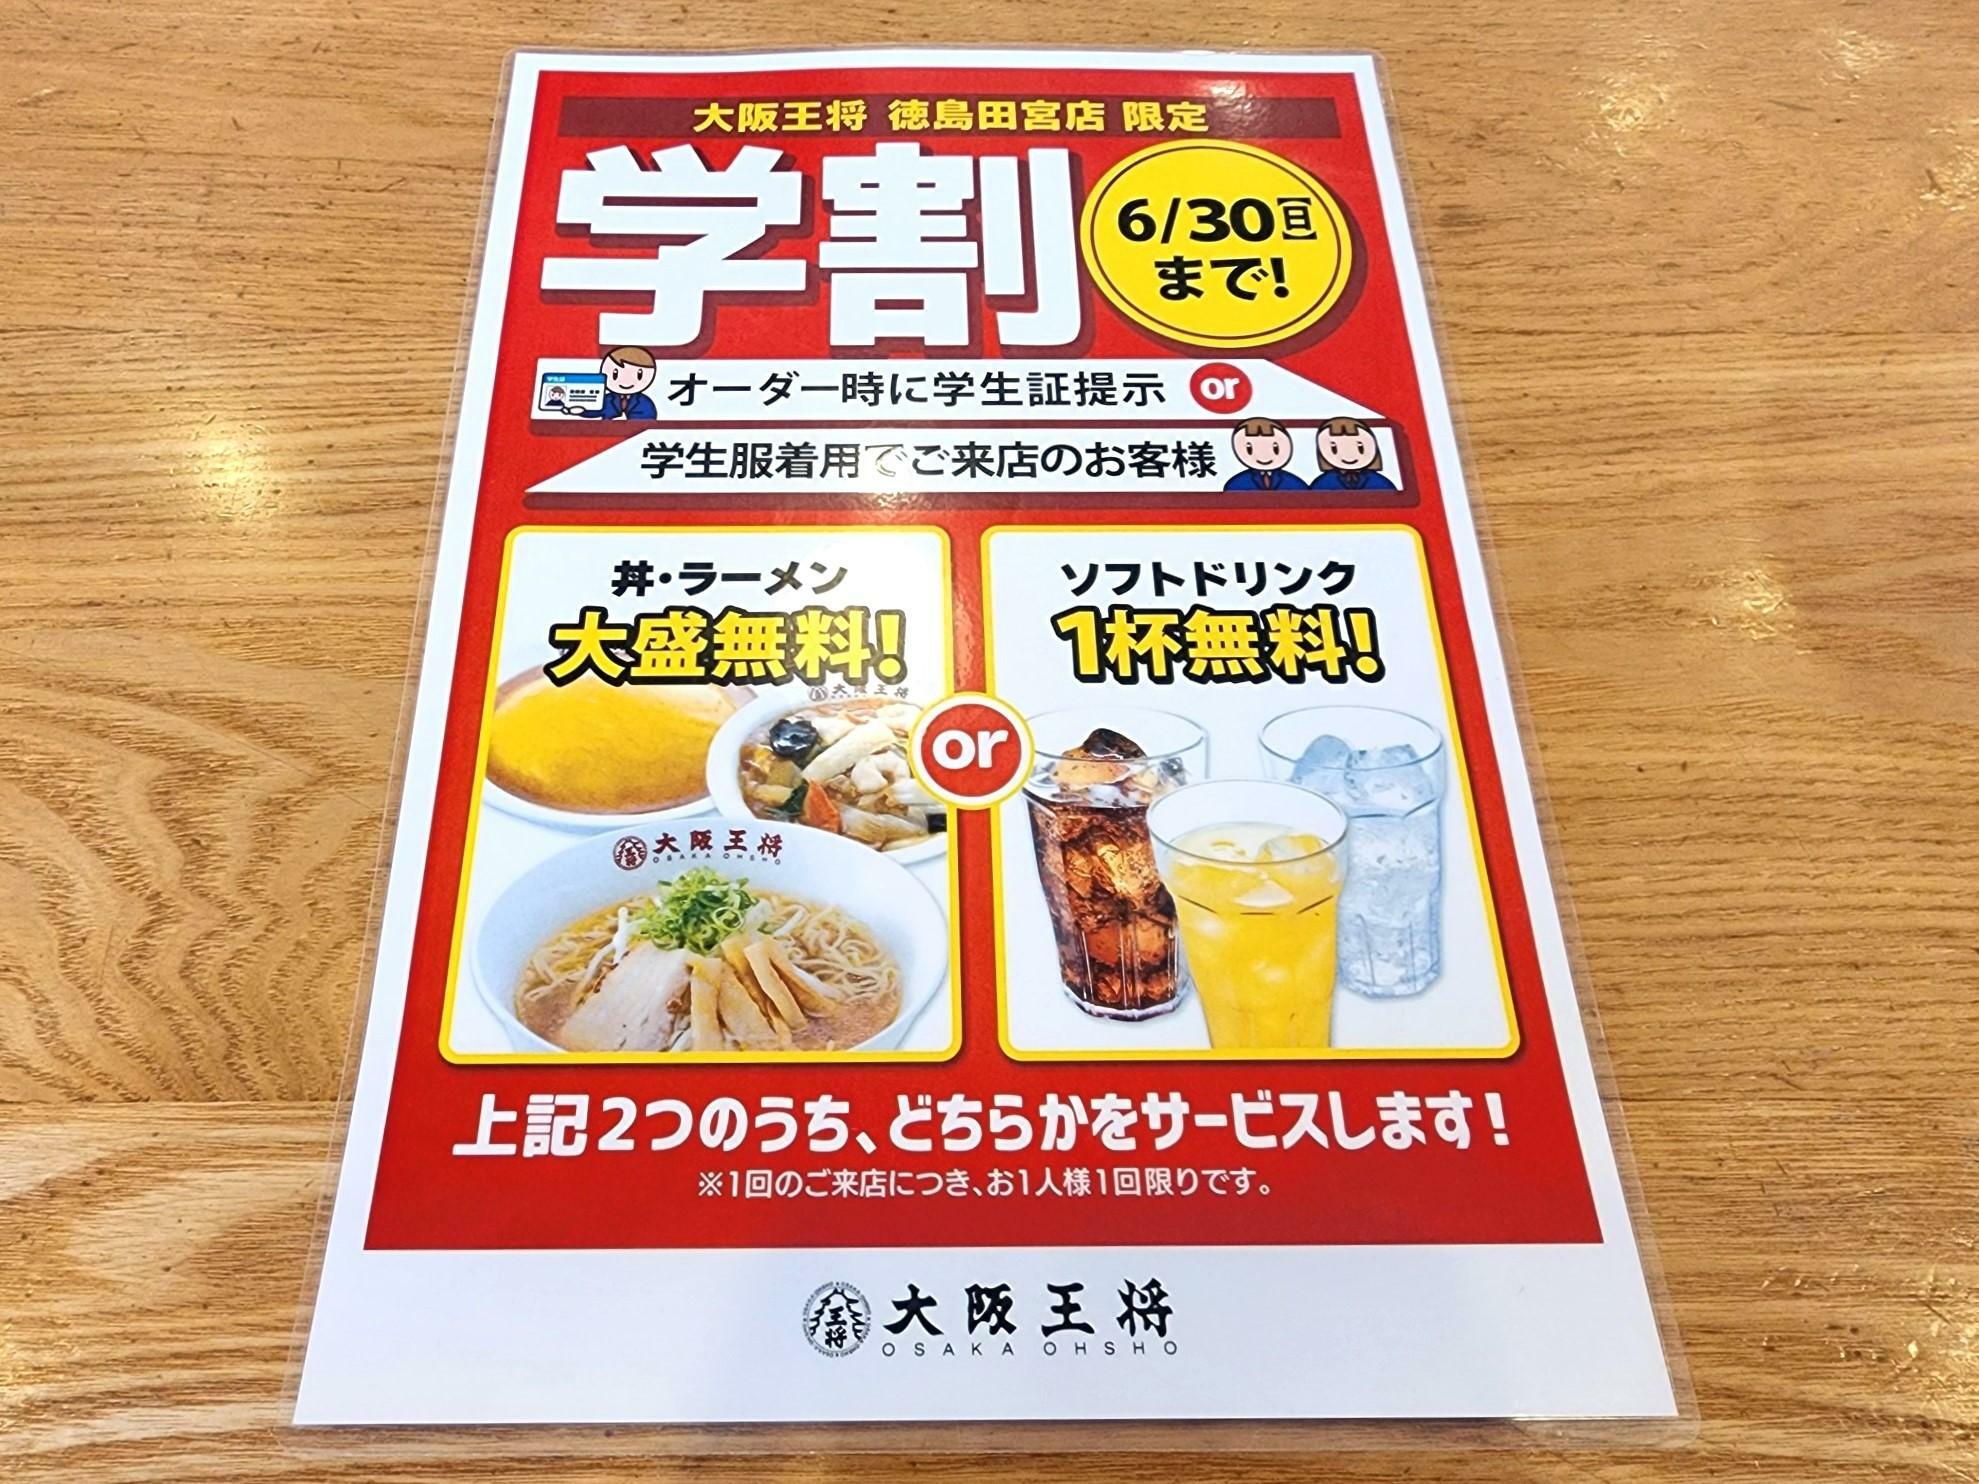 「大阪王将 徳島田宮店」店舗限定キャンペーン。